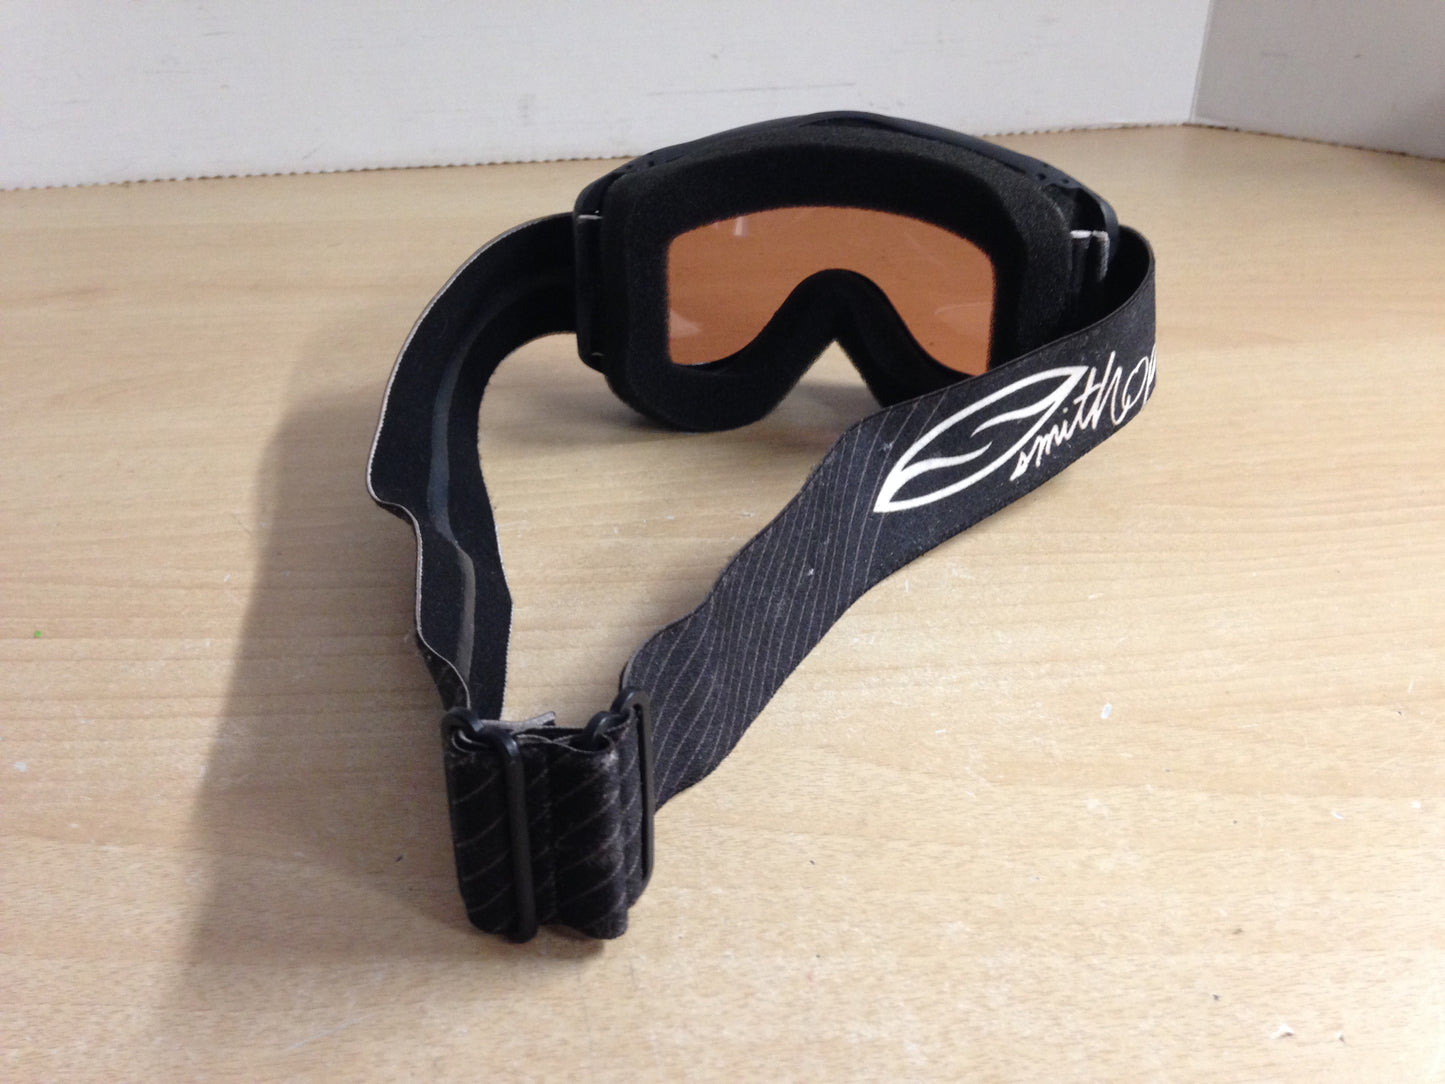 Ski Goggles Child Size 6-8 Smith Optics Black White With Orange Lense